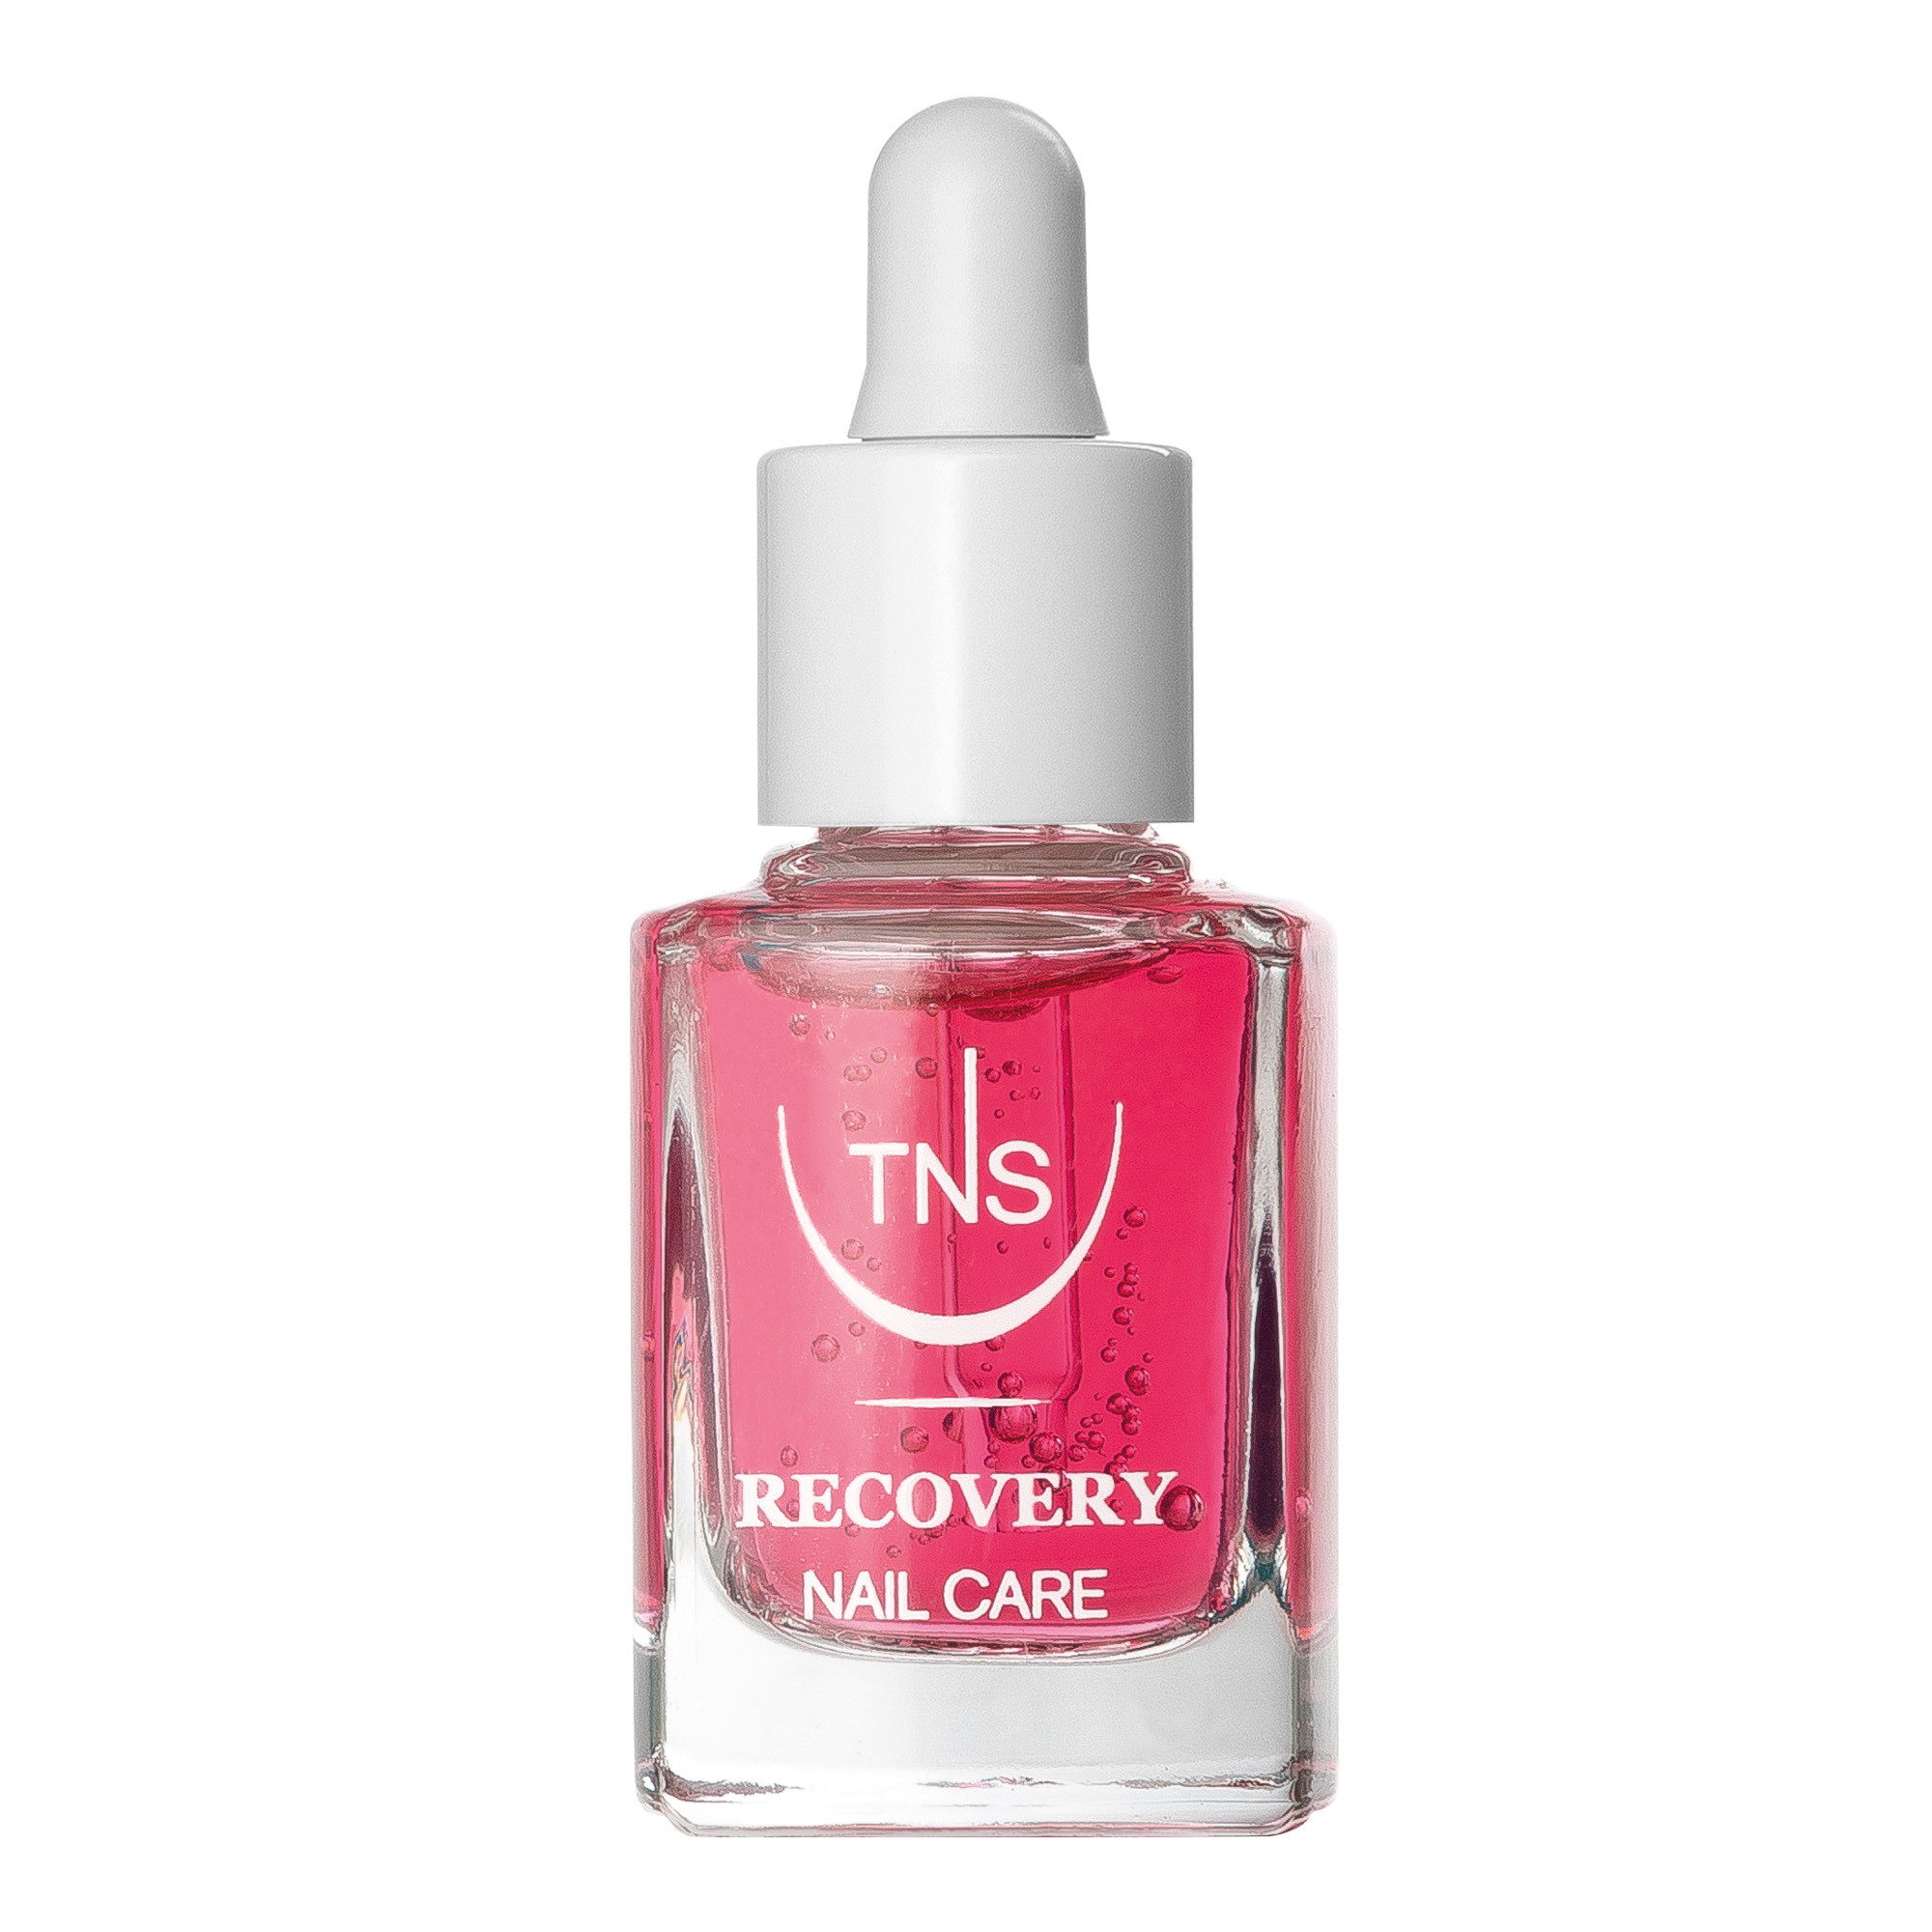 Recovery traitement intensif pour les ongles et cuticules secs en gel TNS 10 ml